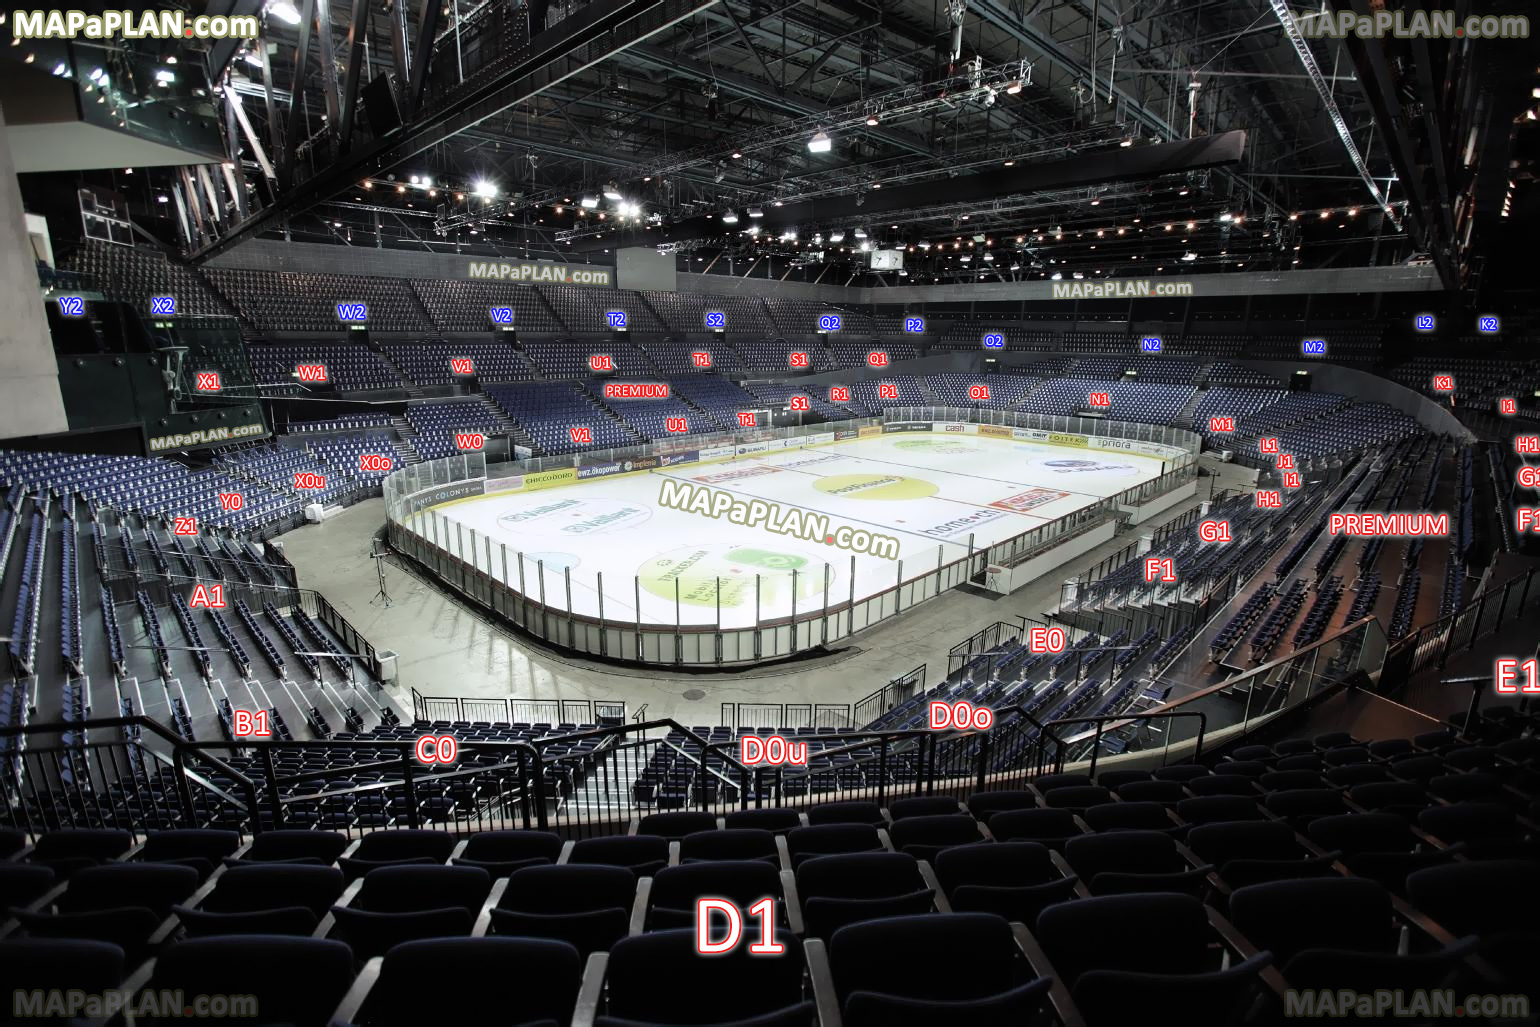 view from block d1 row 37 seat 11 zsc lions ice hockey sicht aus sektor d1 reihe 37 platz 11 virtuelle 3d eishockey sitzplatzübersicht tour Zurich Hallenstadion seating plan